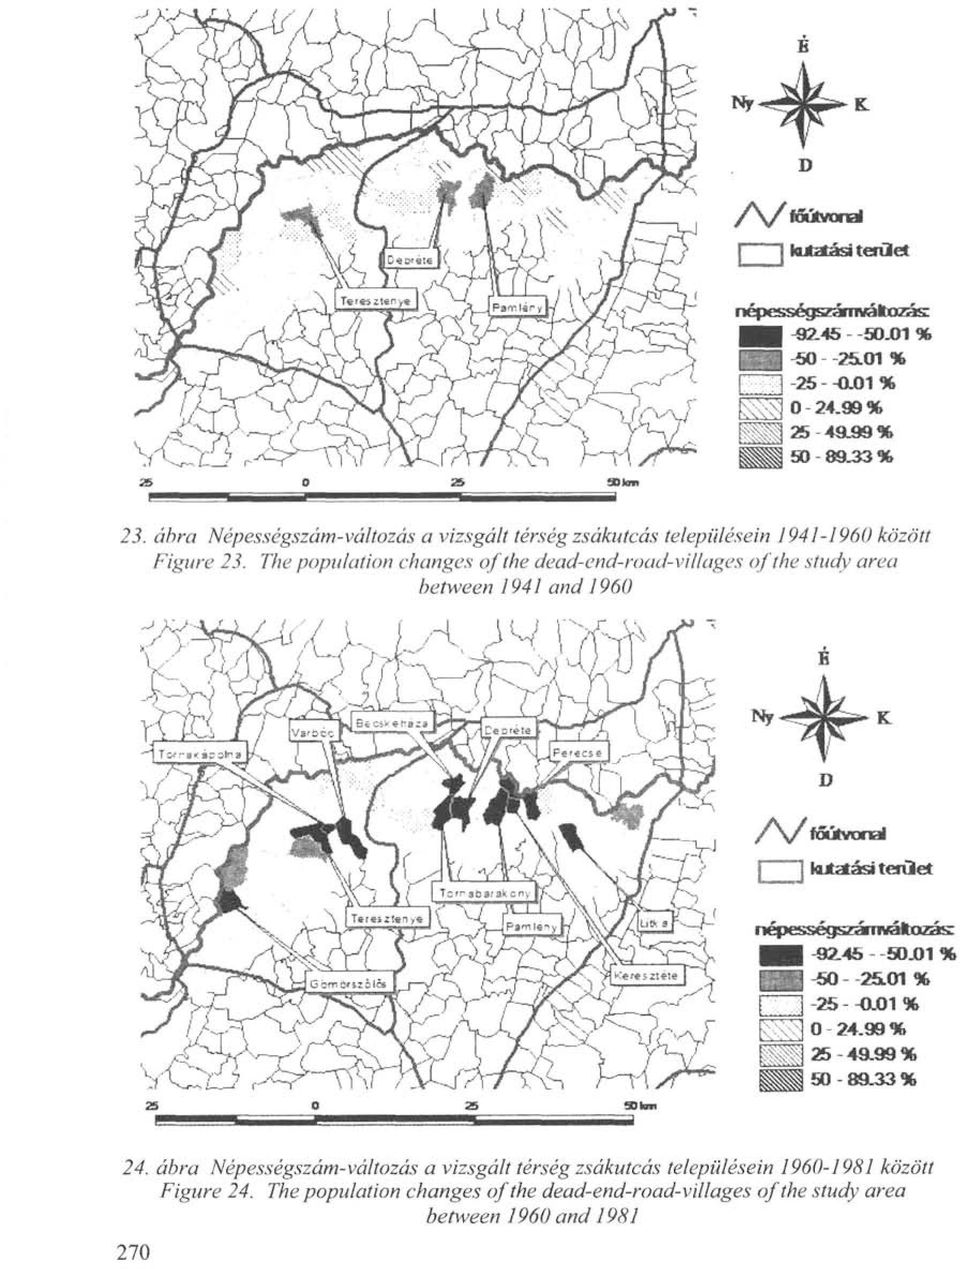 24. ábra Népességszám-változás a vizsgált térség zsákutcás településein 1960-1981 között Figure